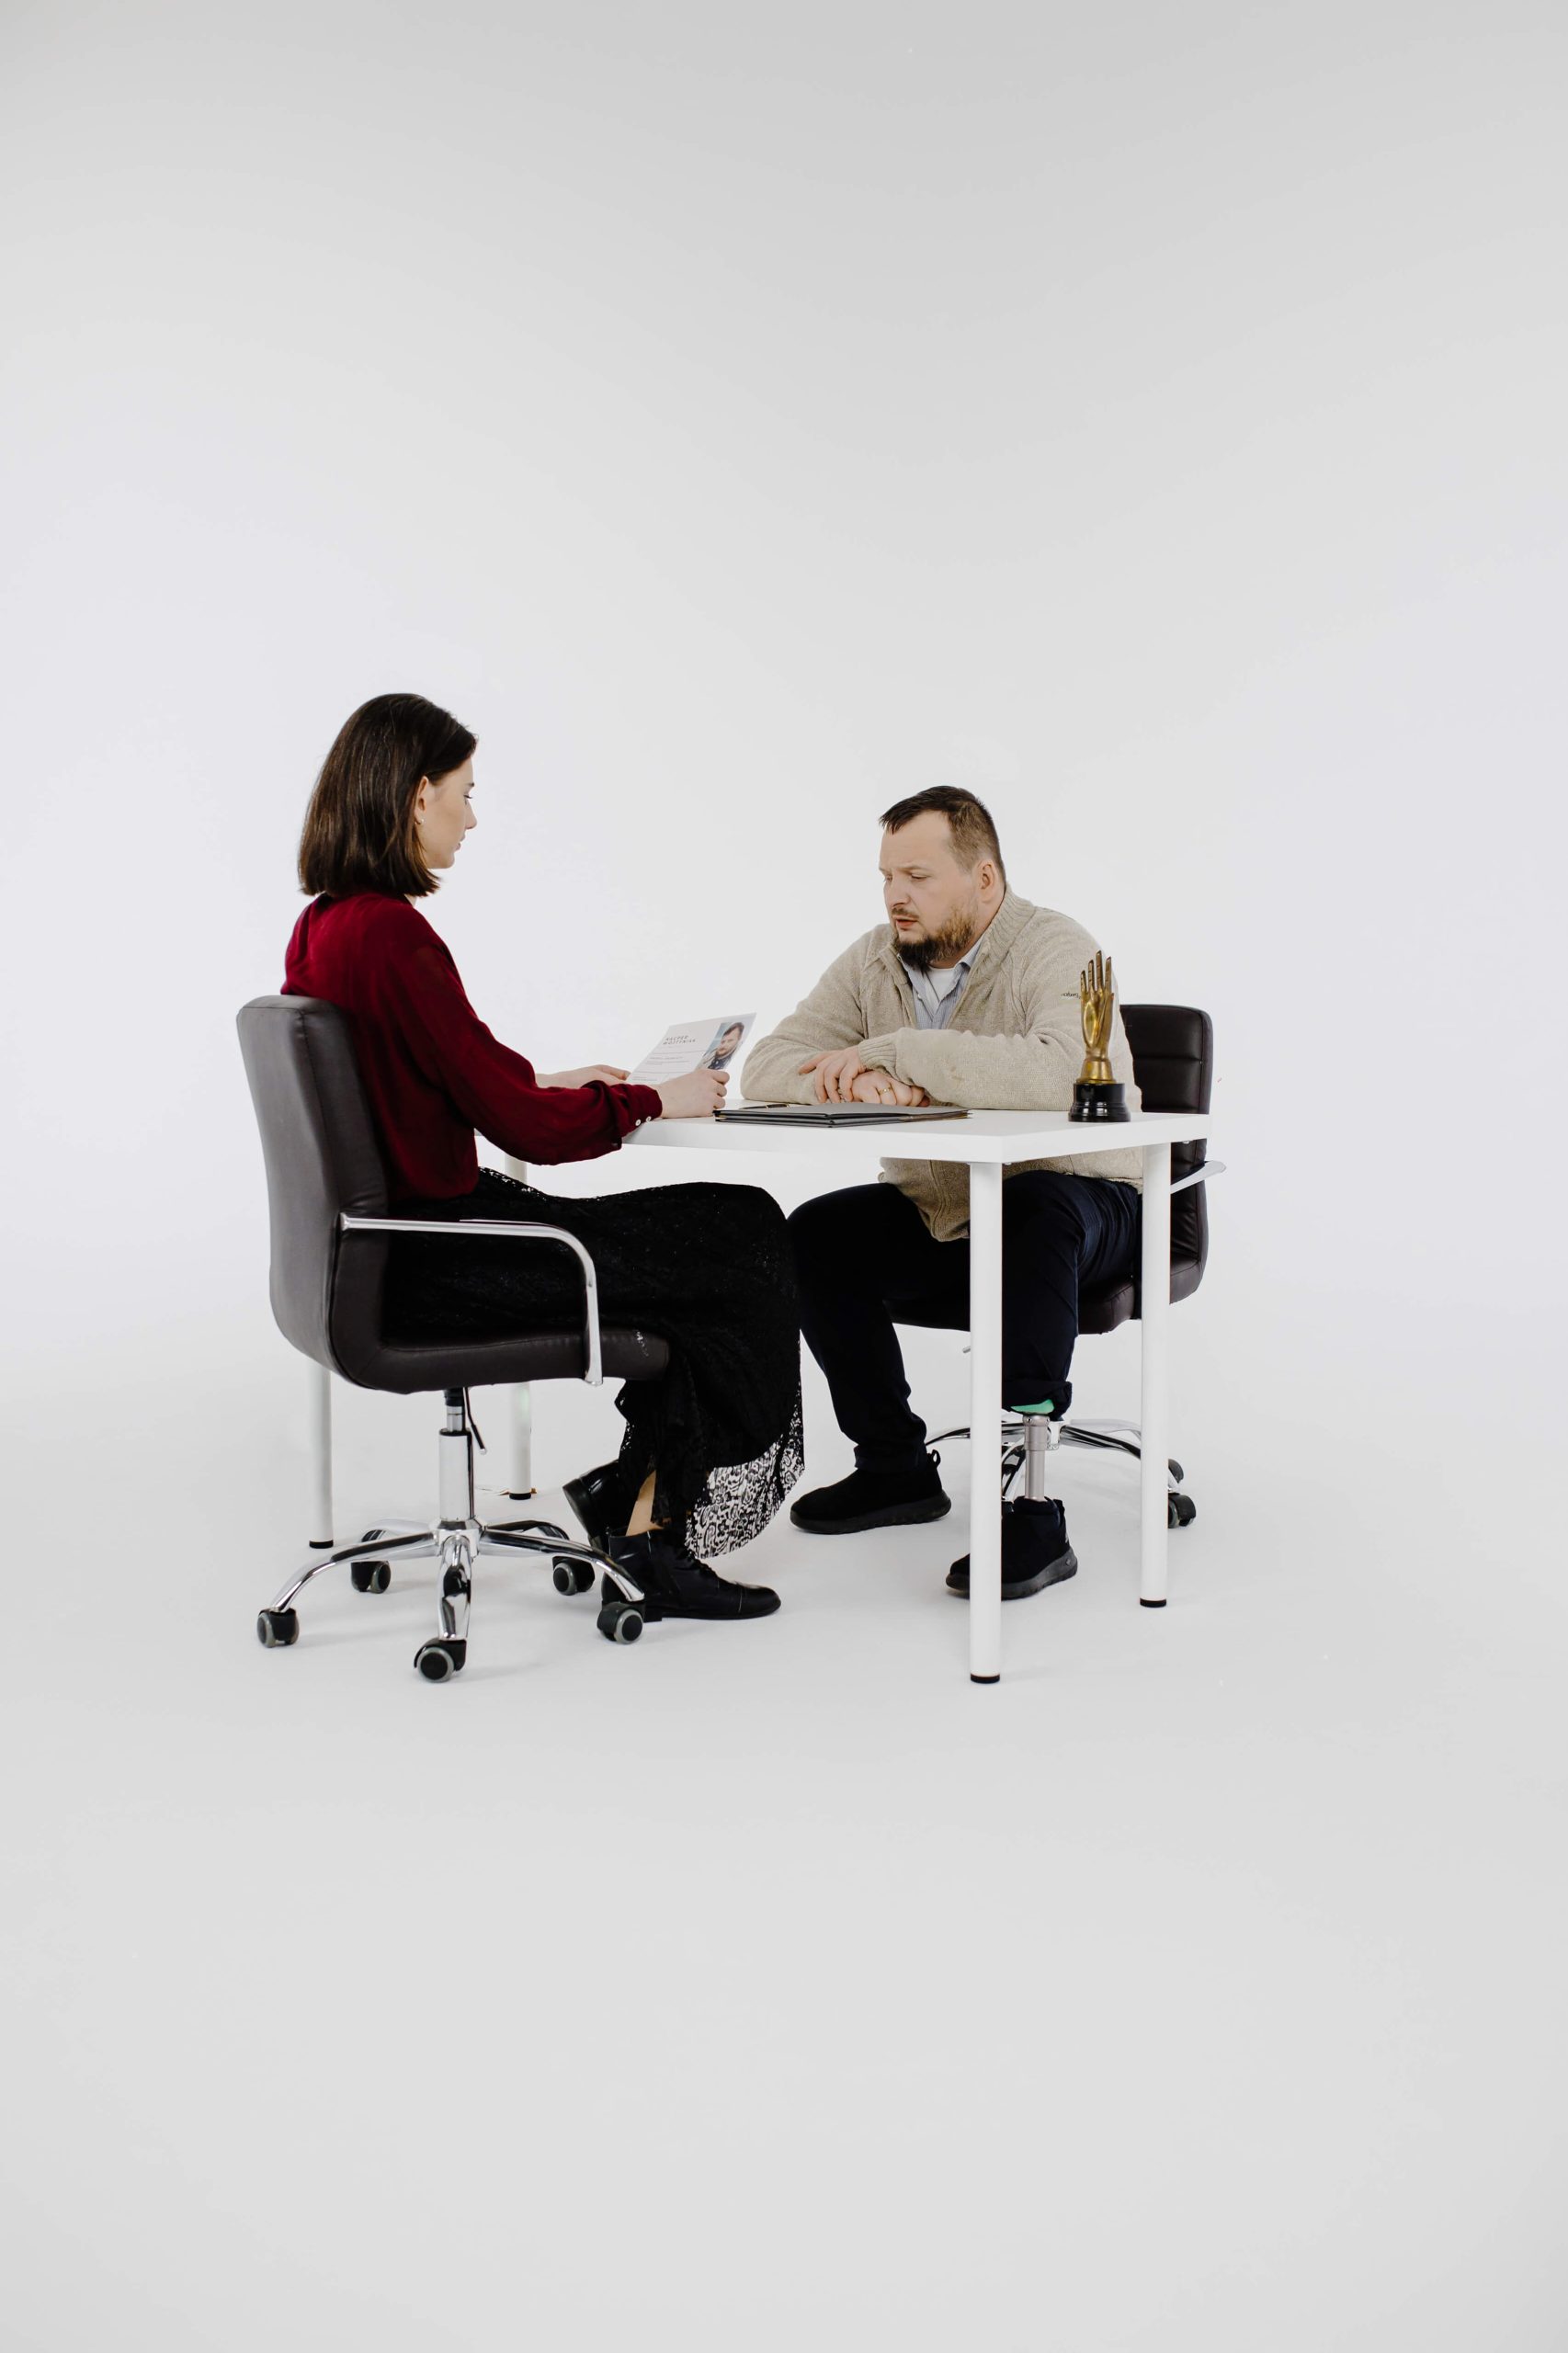 Mężczyzna z protezą nogi siedzi przy biurku i rozmawia z kobietą siedzącą na przeciwko.